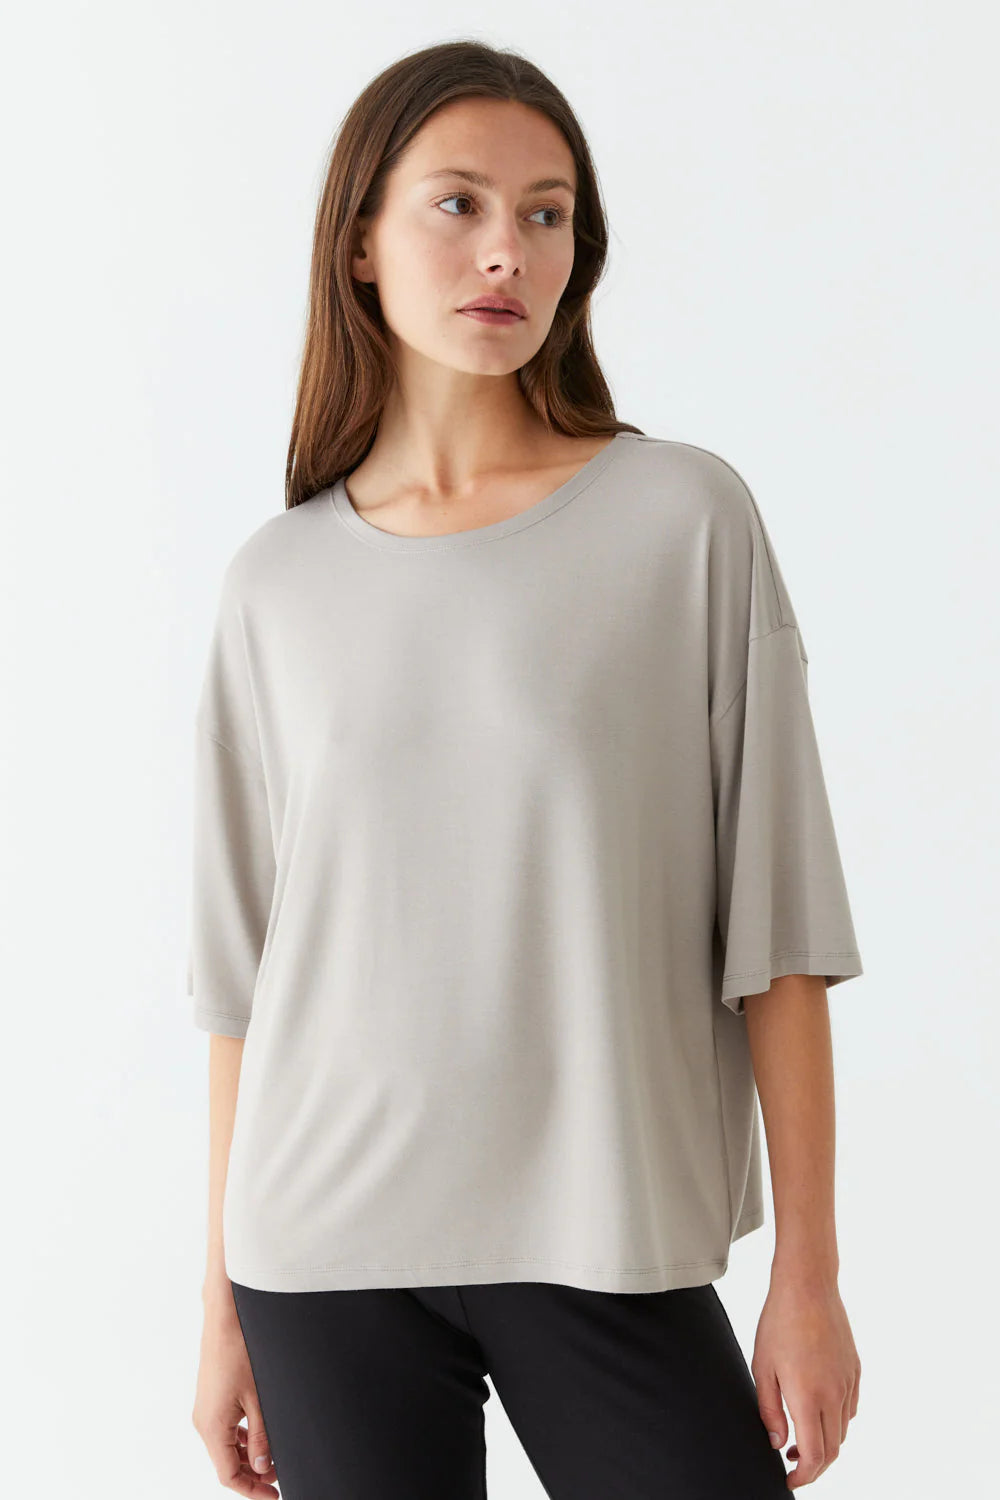 Movesgood - Oversize T-Shirt Olivia aus Bambus taupe